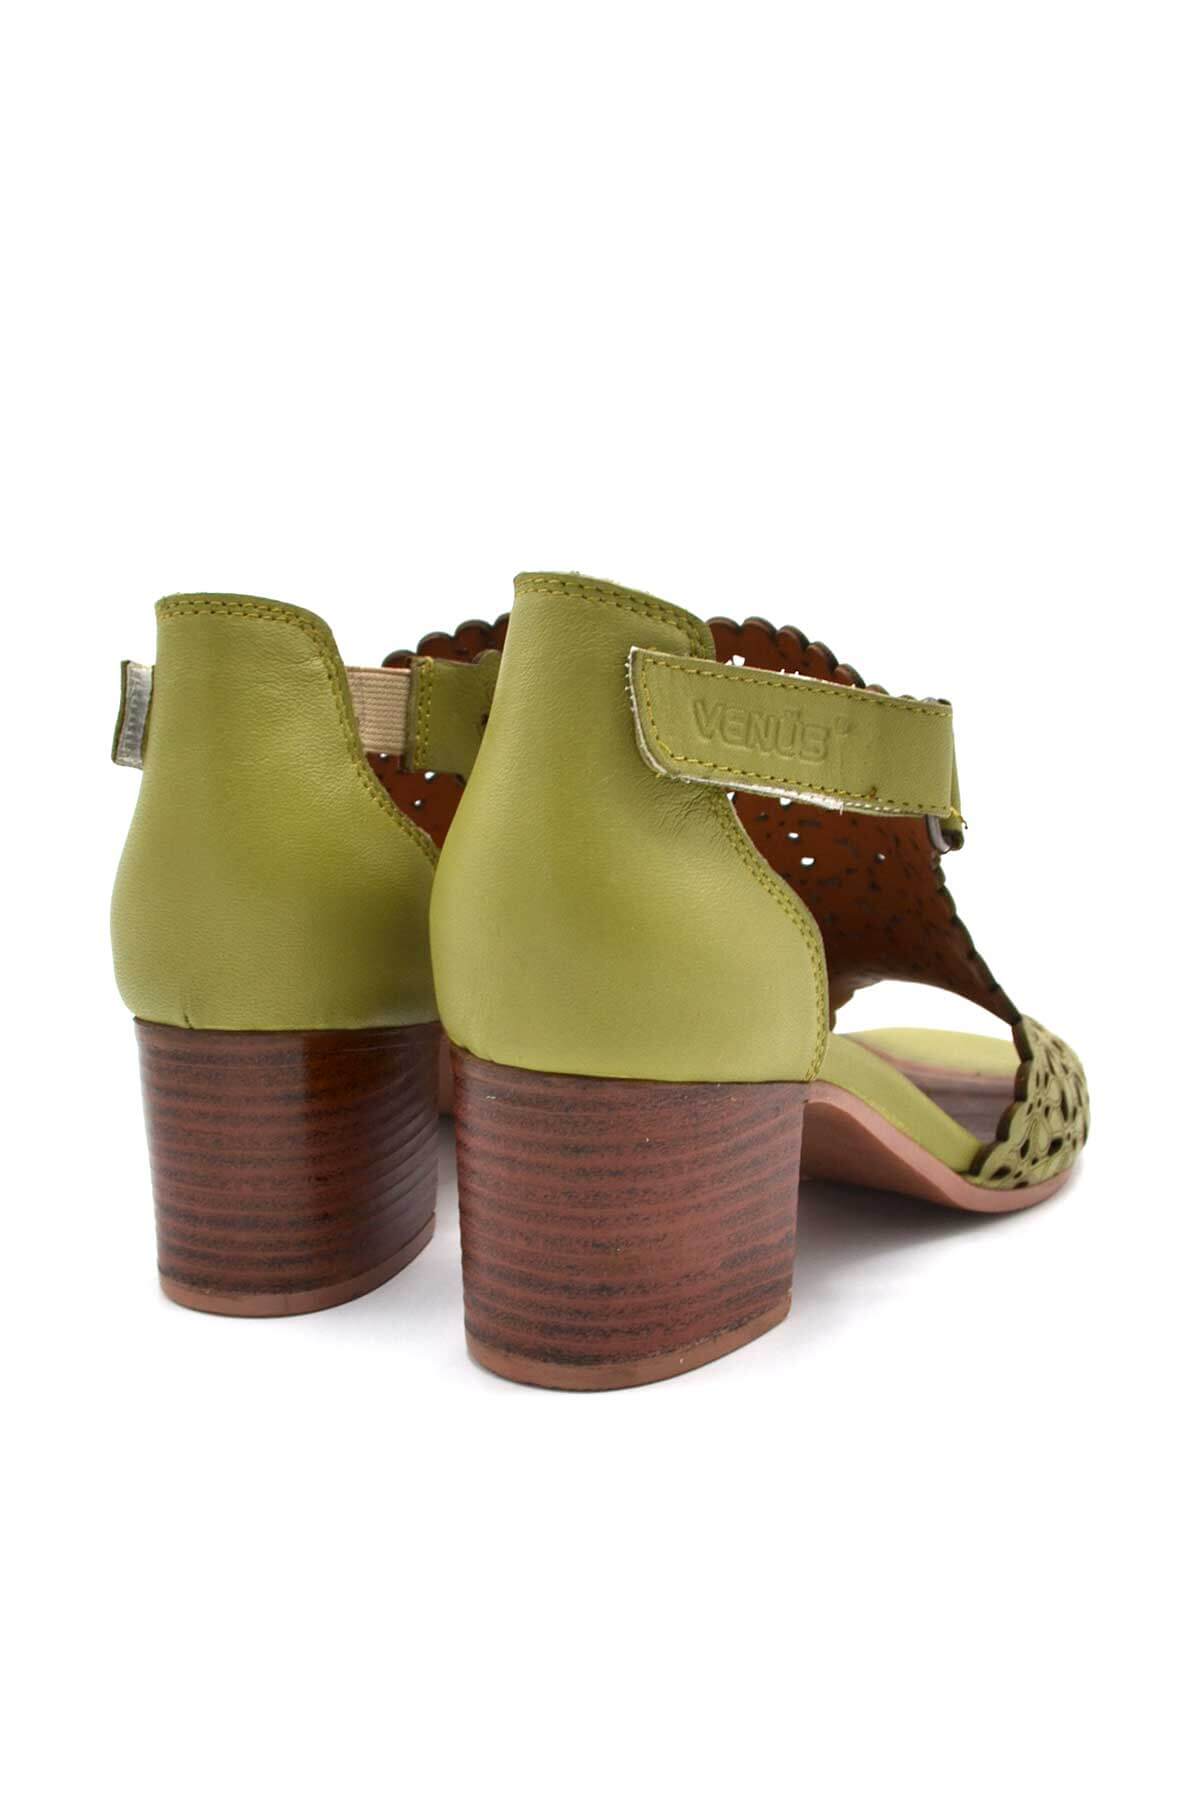 Kadın Topuklu Deri Sandalet Yeşil 1857215Y